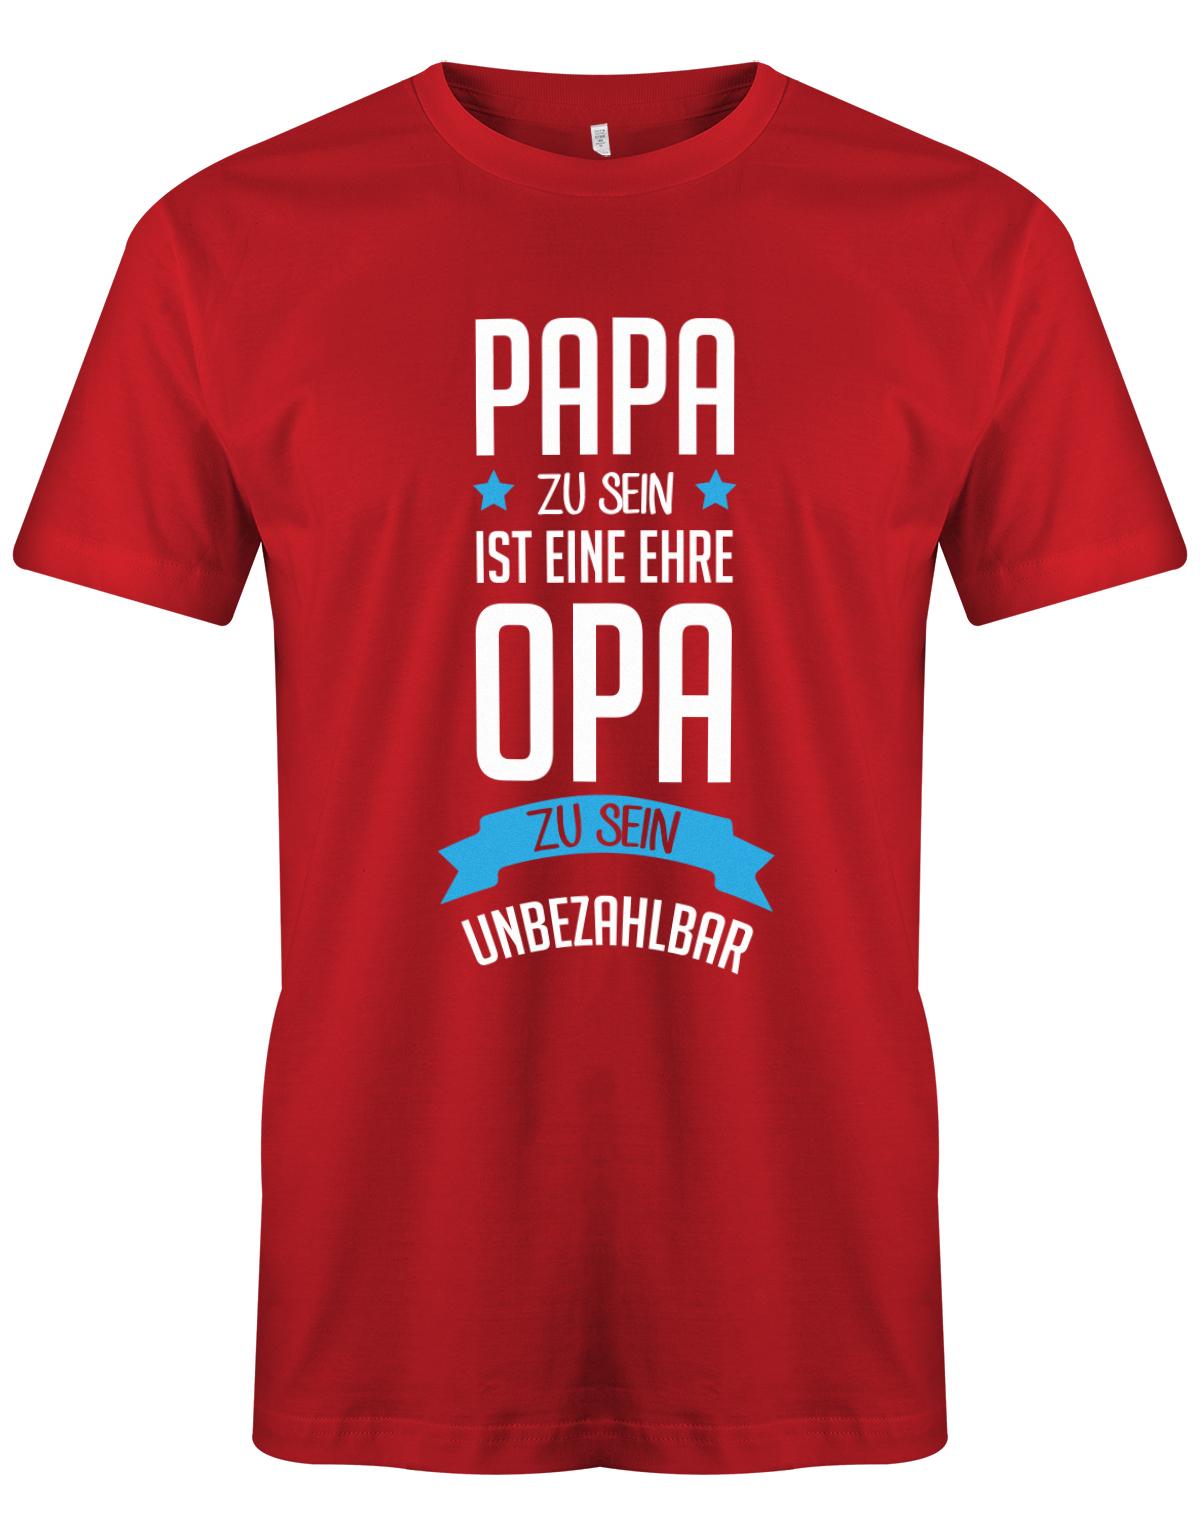 Opa T-Shirt Spruch für den werdenden Opa. Papa zu sein, ist eine Ehre, Opa zu sein unbezahlbar. Rot